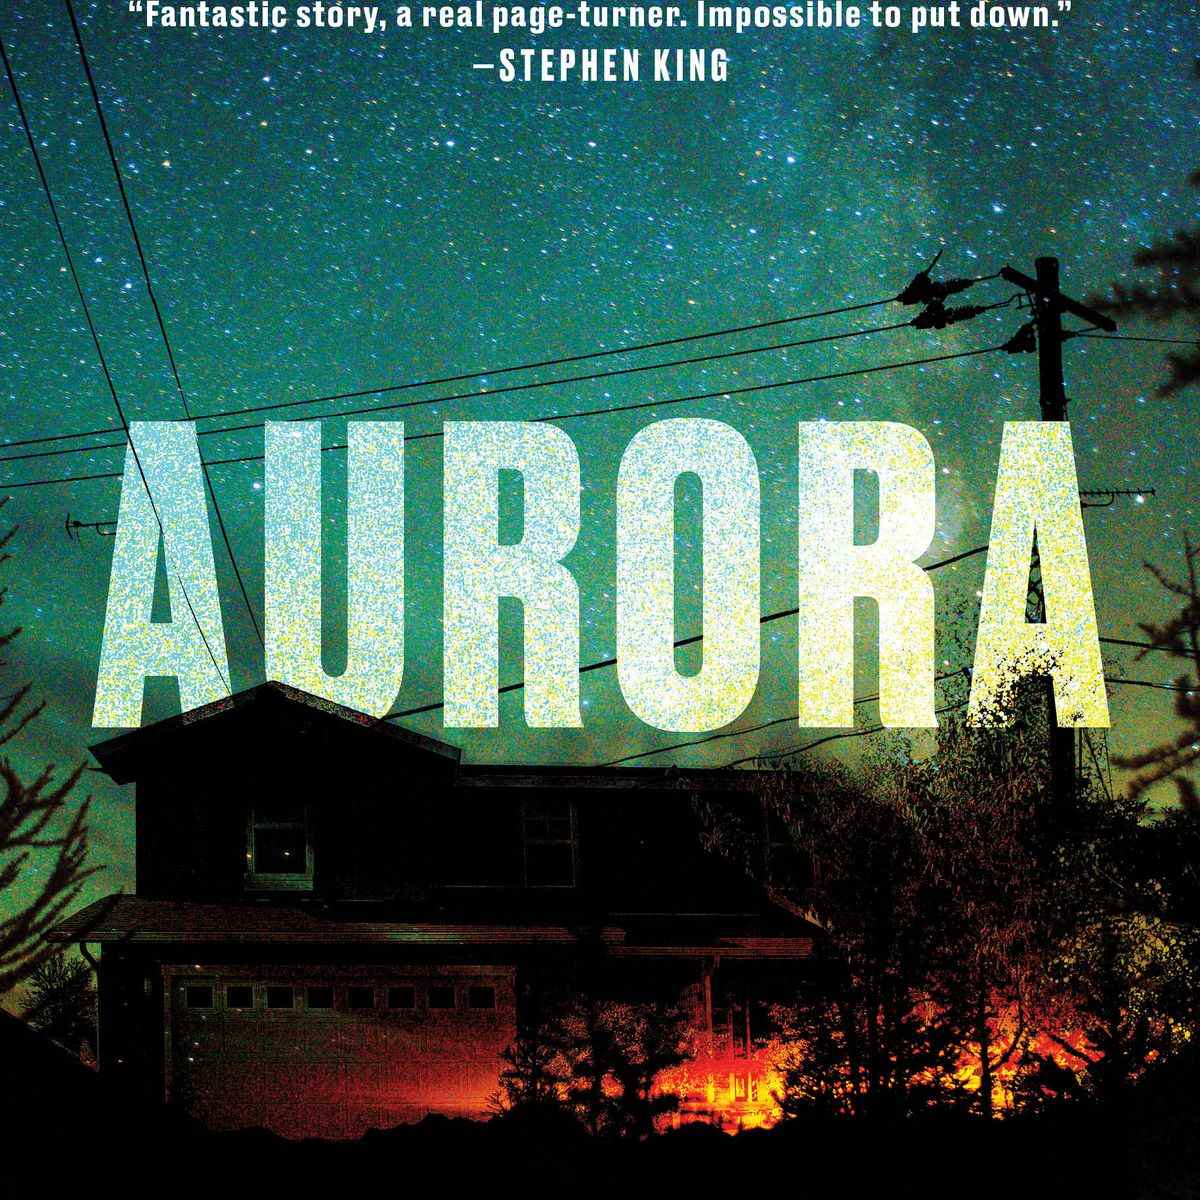 Couverture d' Aurora de David Koepp , montrant une maison dans l'obscurité contre un ciel étoilé vif, avec un flamboiement de feu orange devant elle